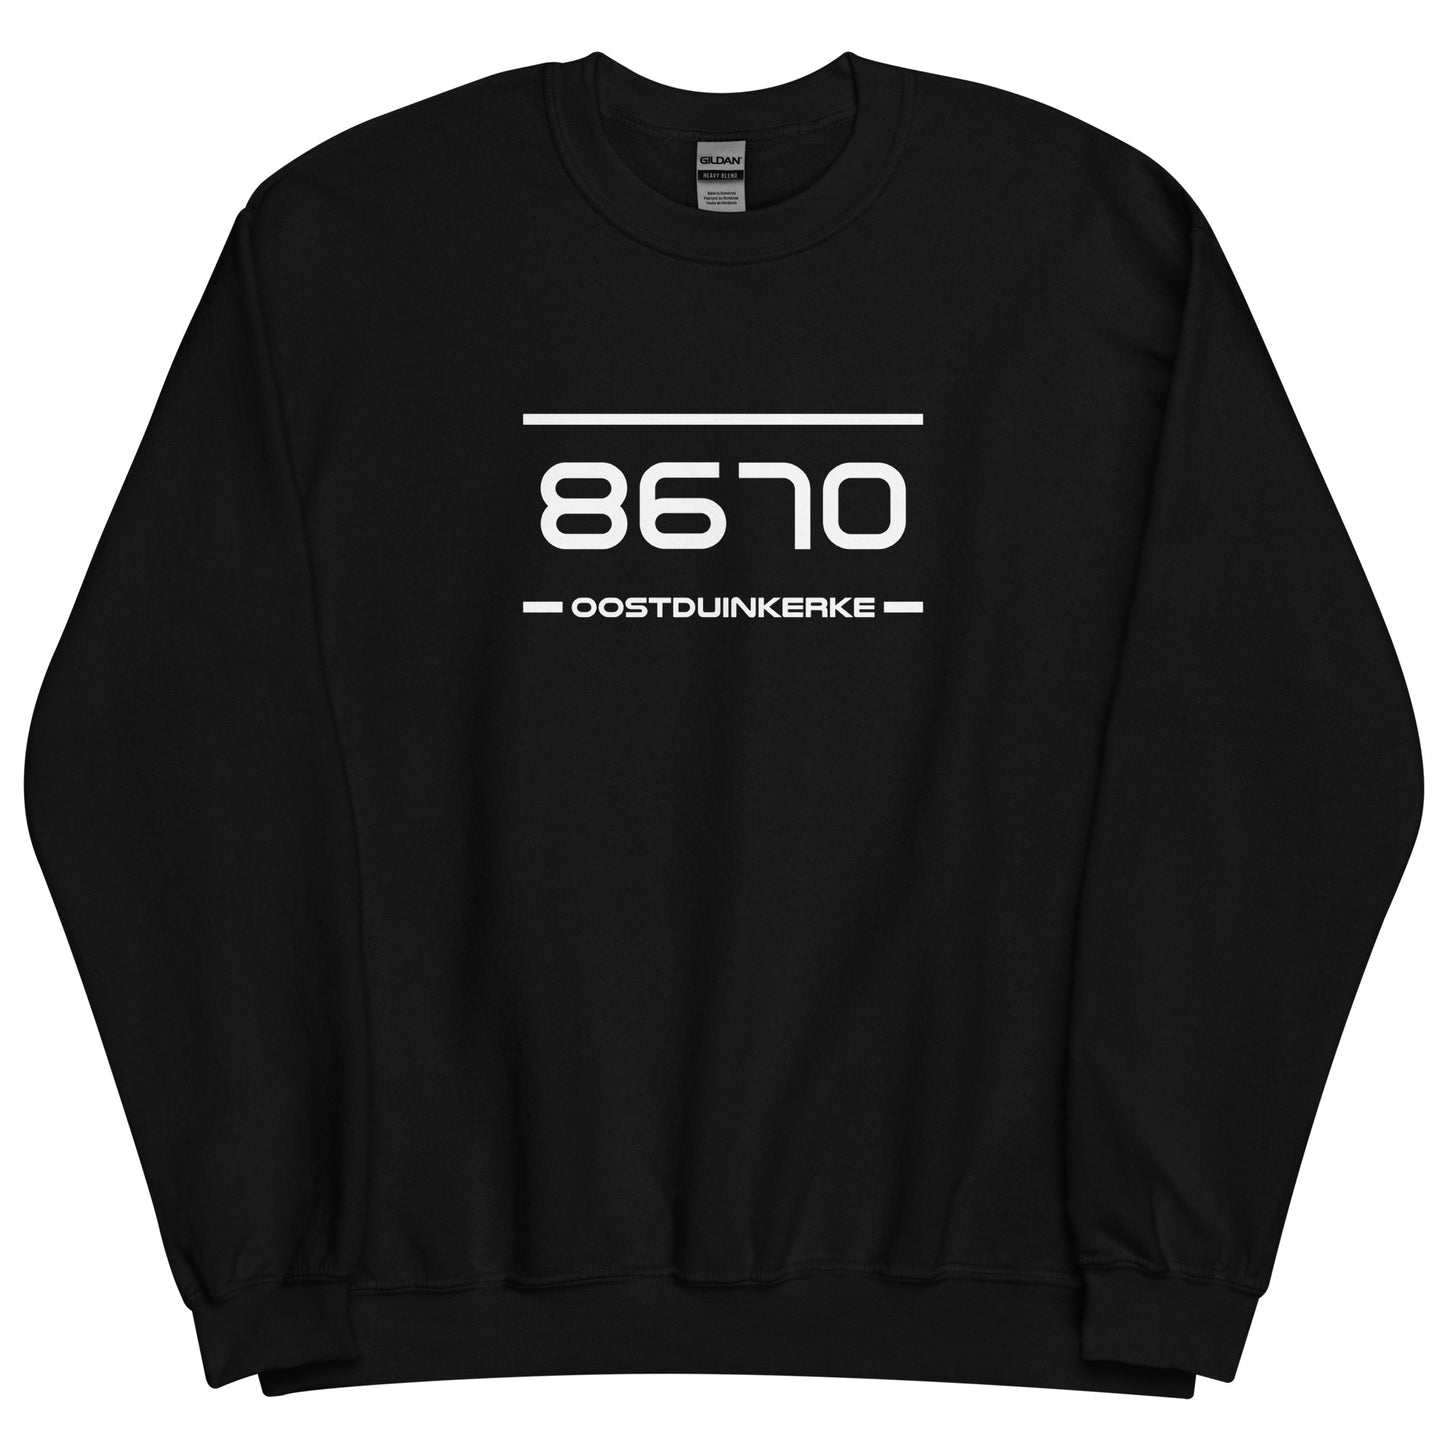 Sweater - 8670 - Oostduinkerke (M/V)